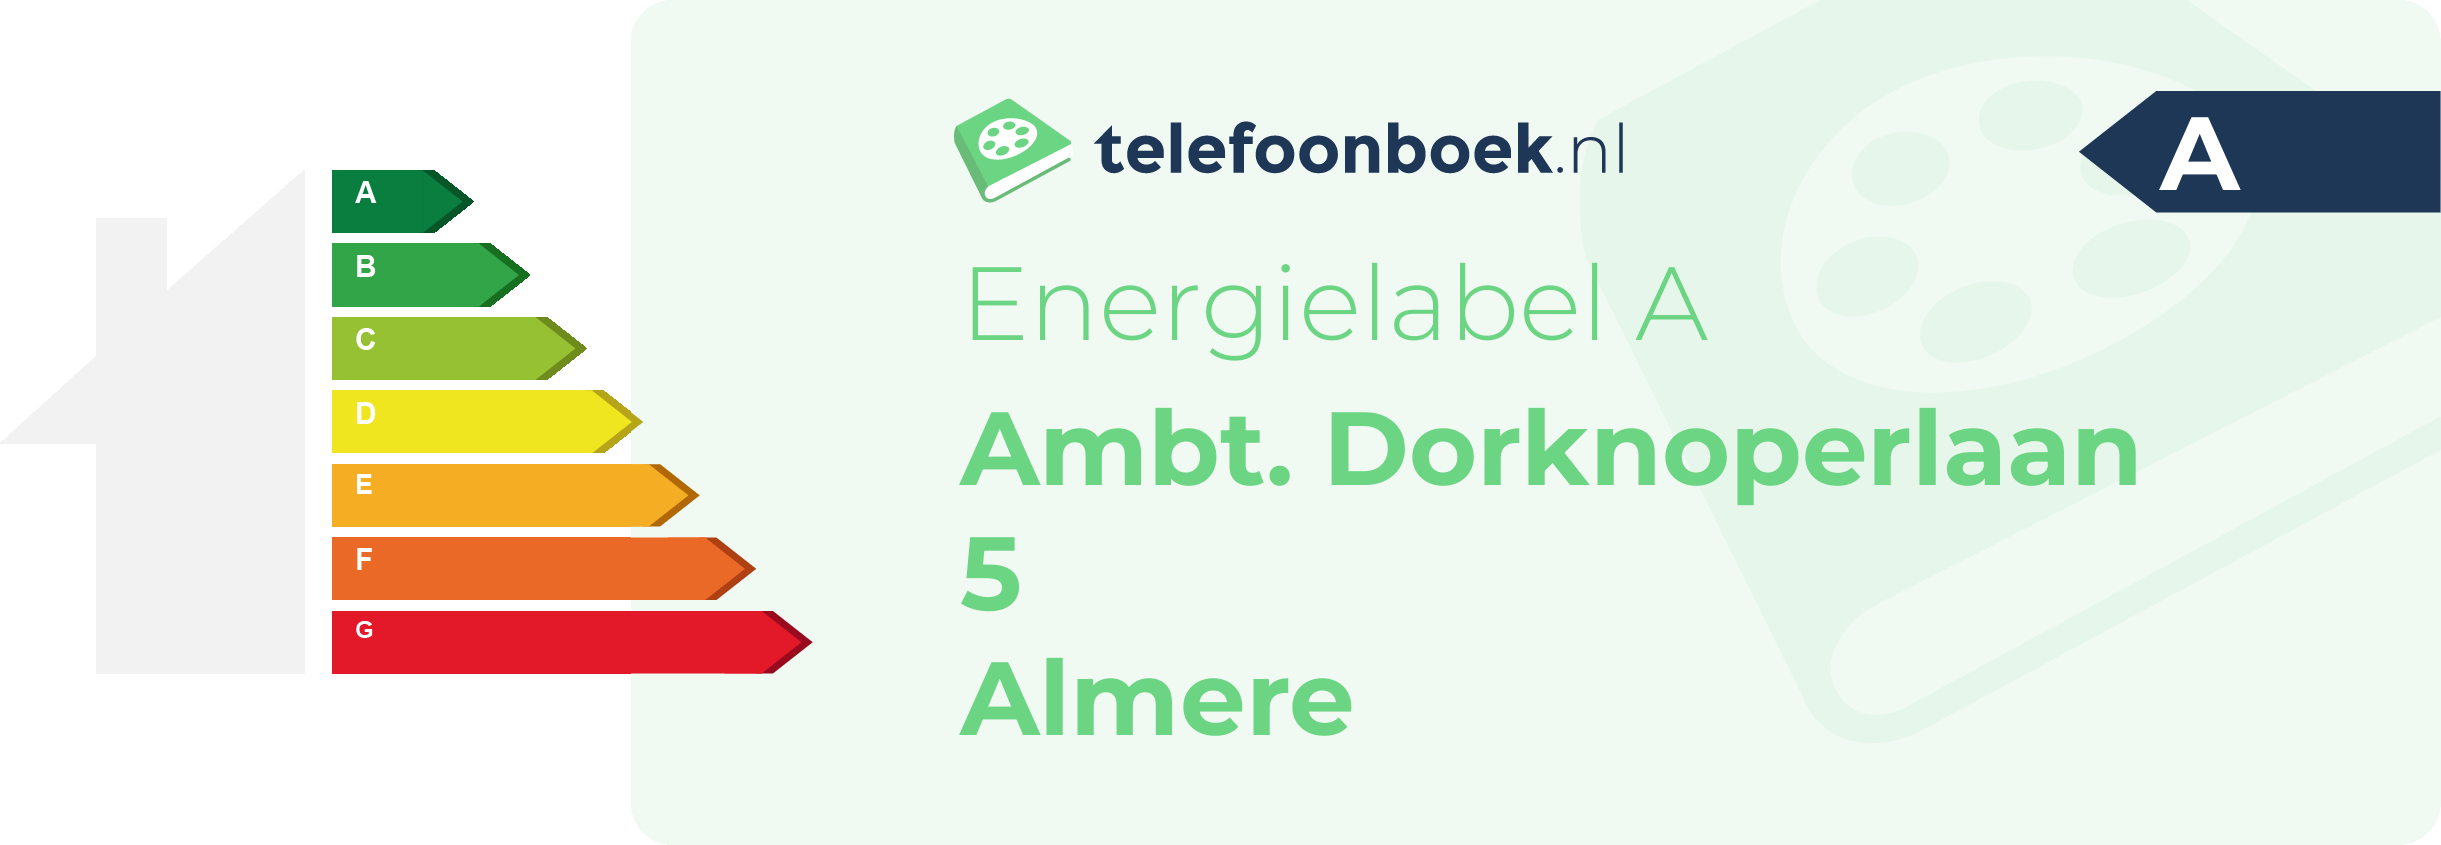 Energielabel Ambt. Dorknoperlaan 5 Almere